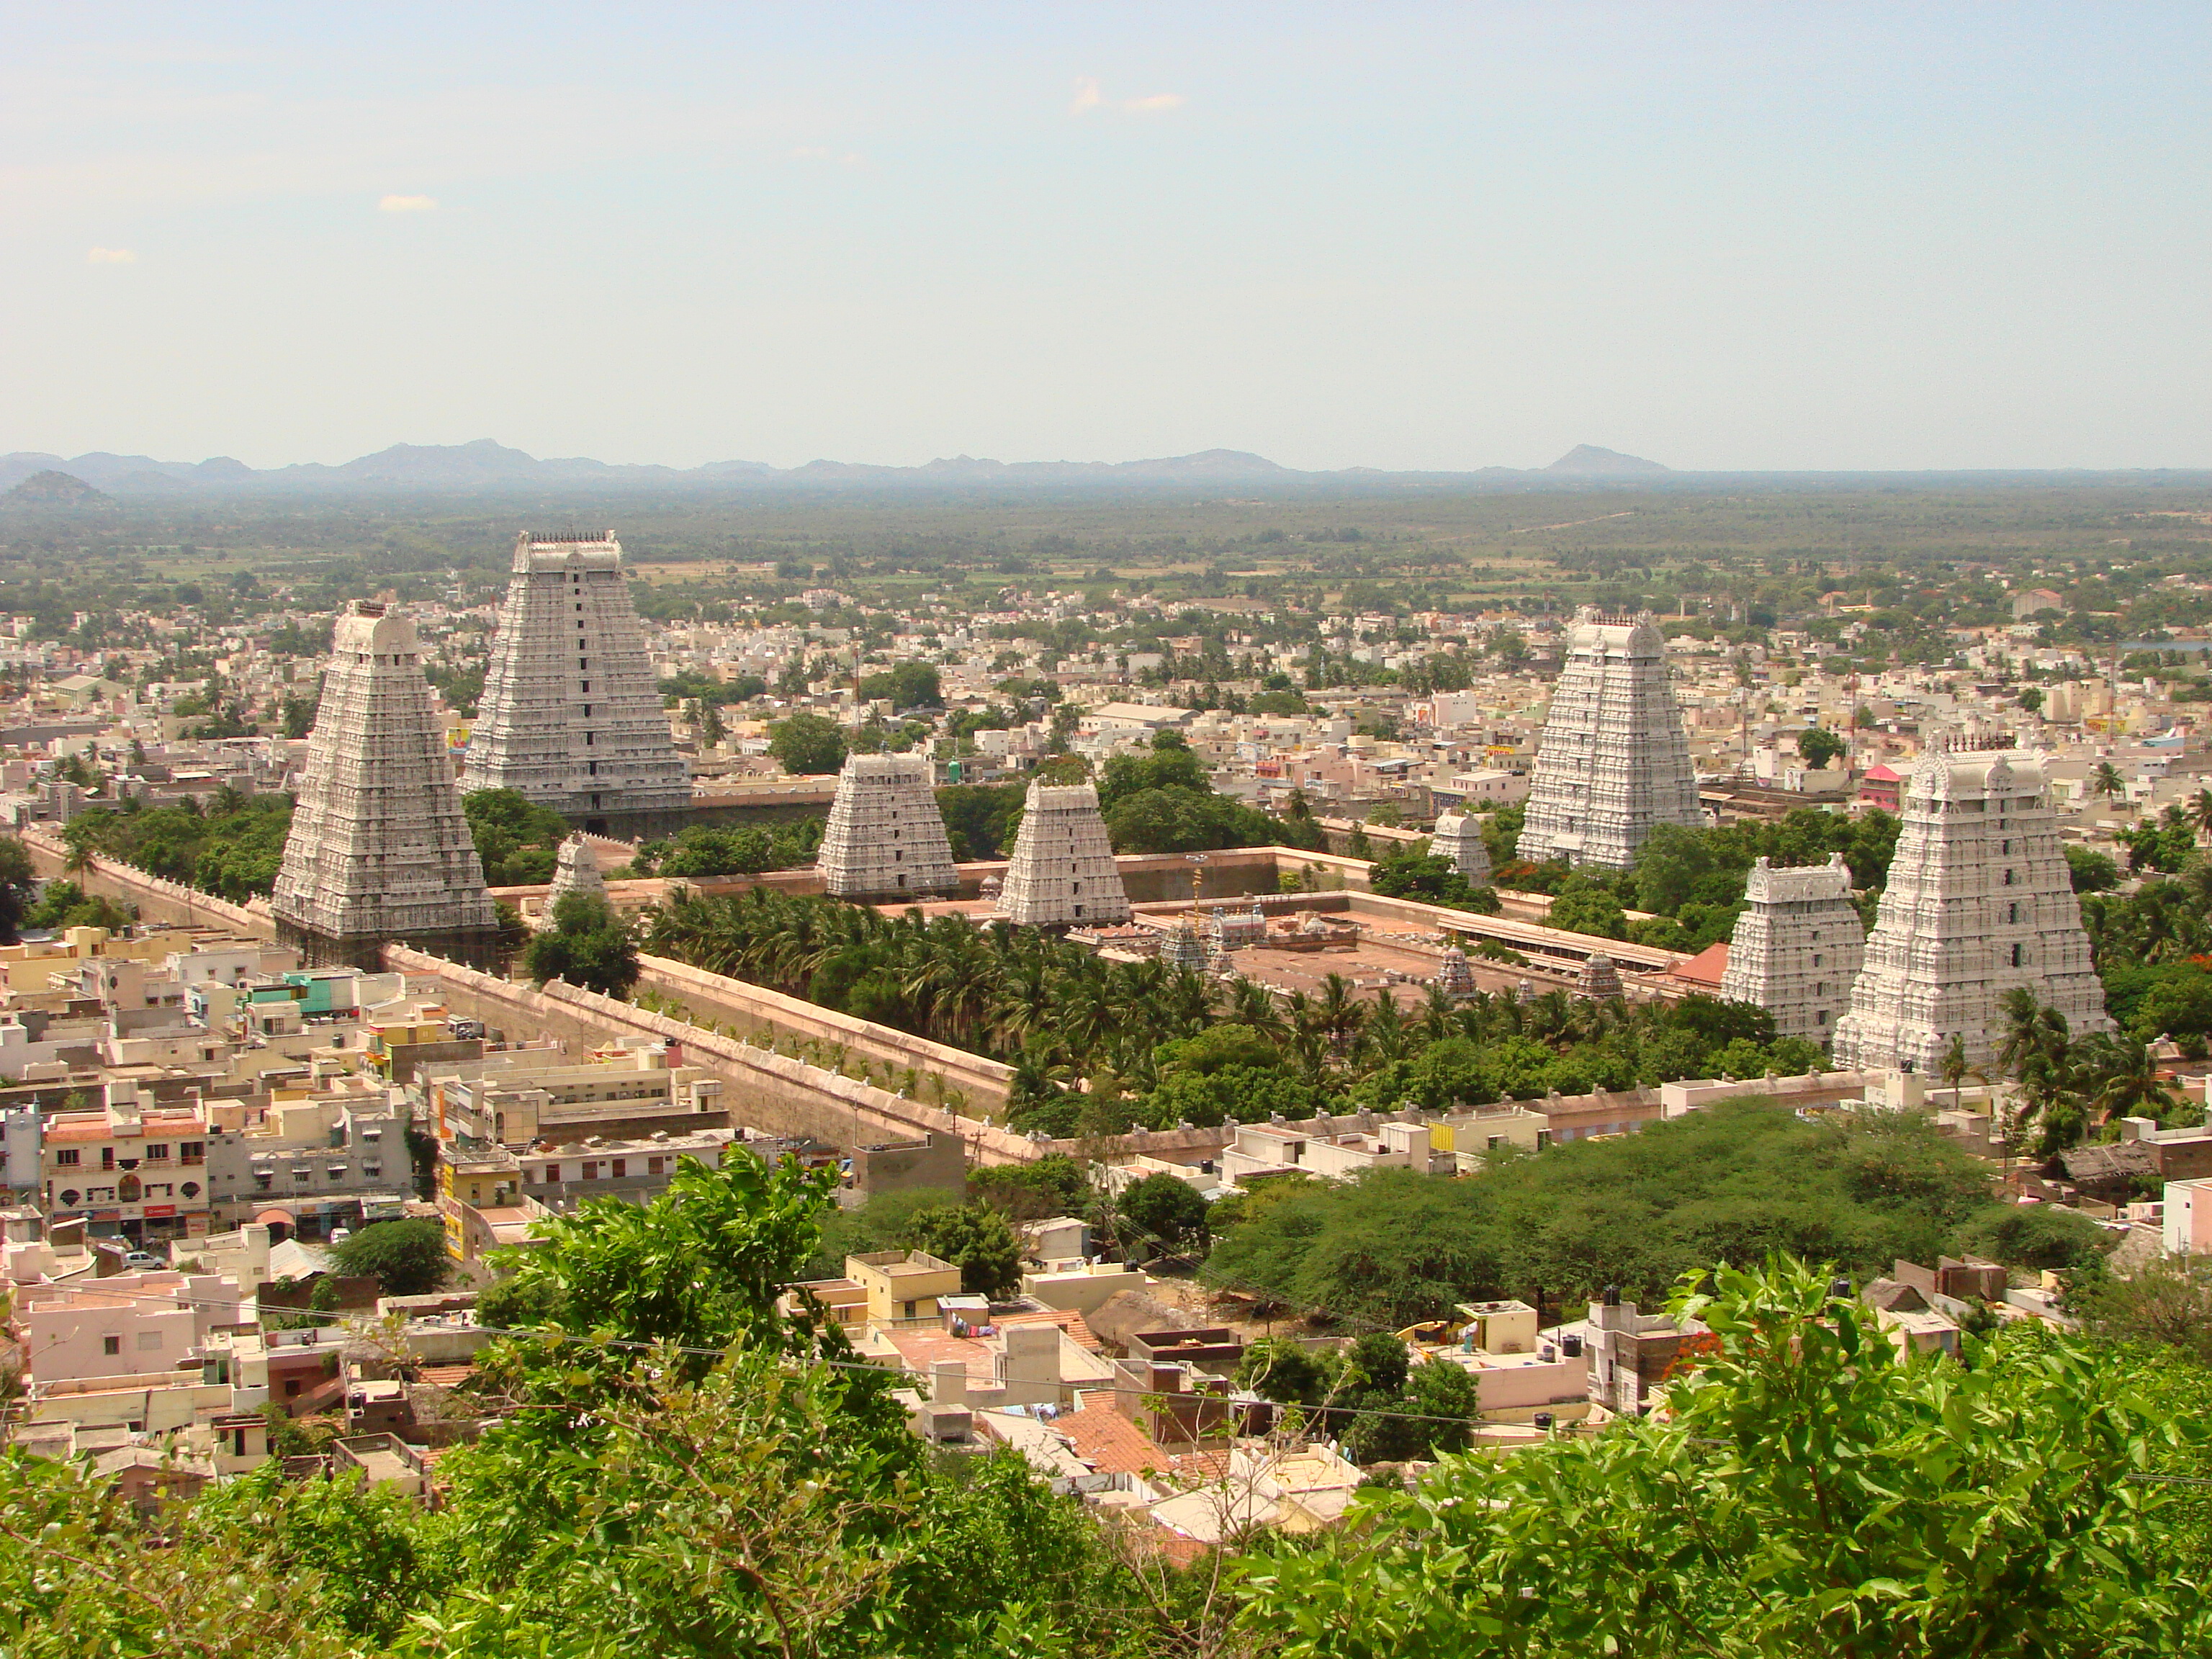 Panaroma of Tiruvannamalai Temple and City